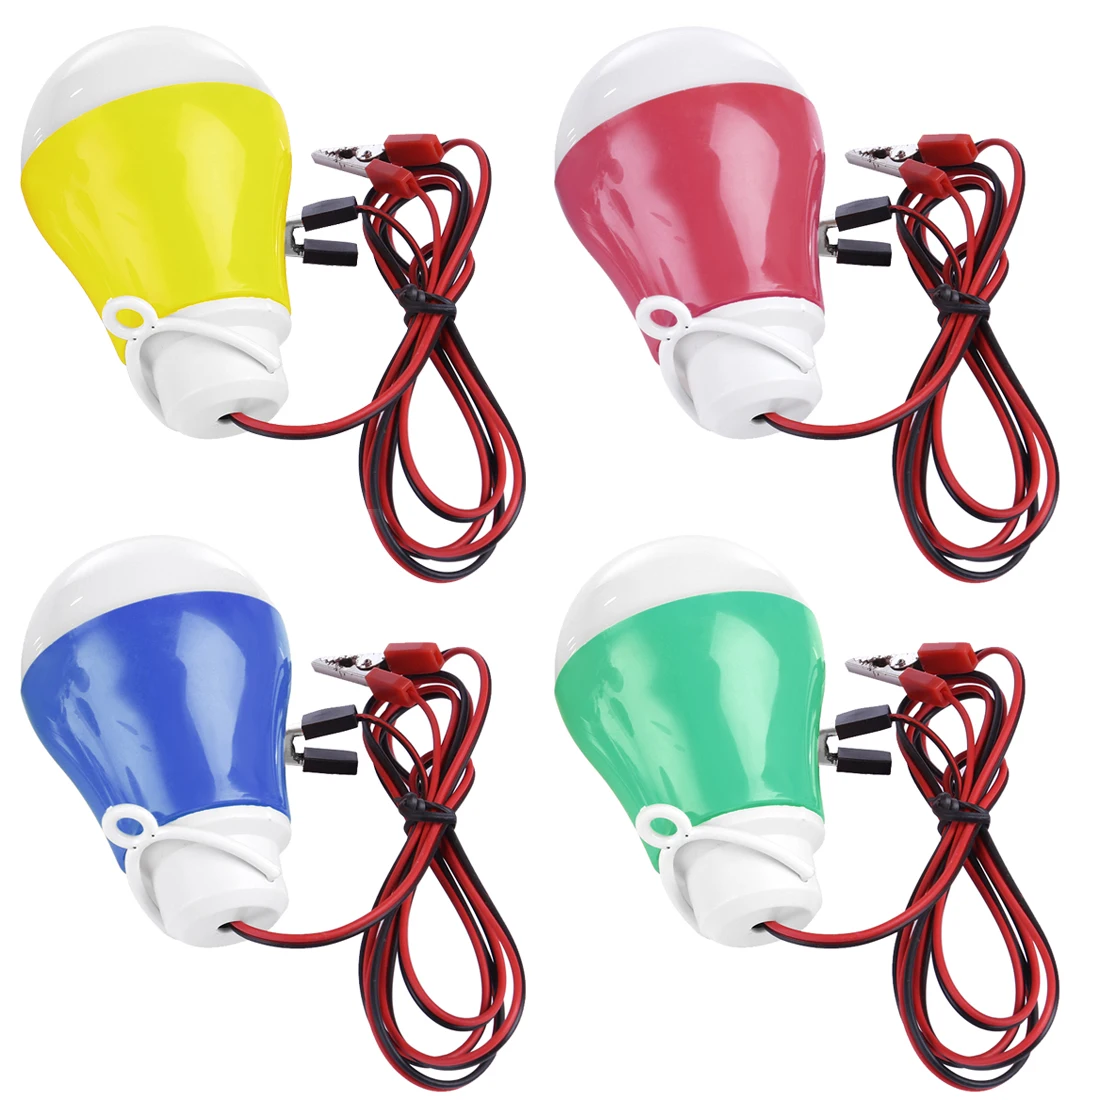 5v5w светодиодный Замена лампы накаливания с проводки и зажим для стерлингов генератор (красный/желтый/синий/зеленый случайный) модель